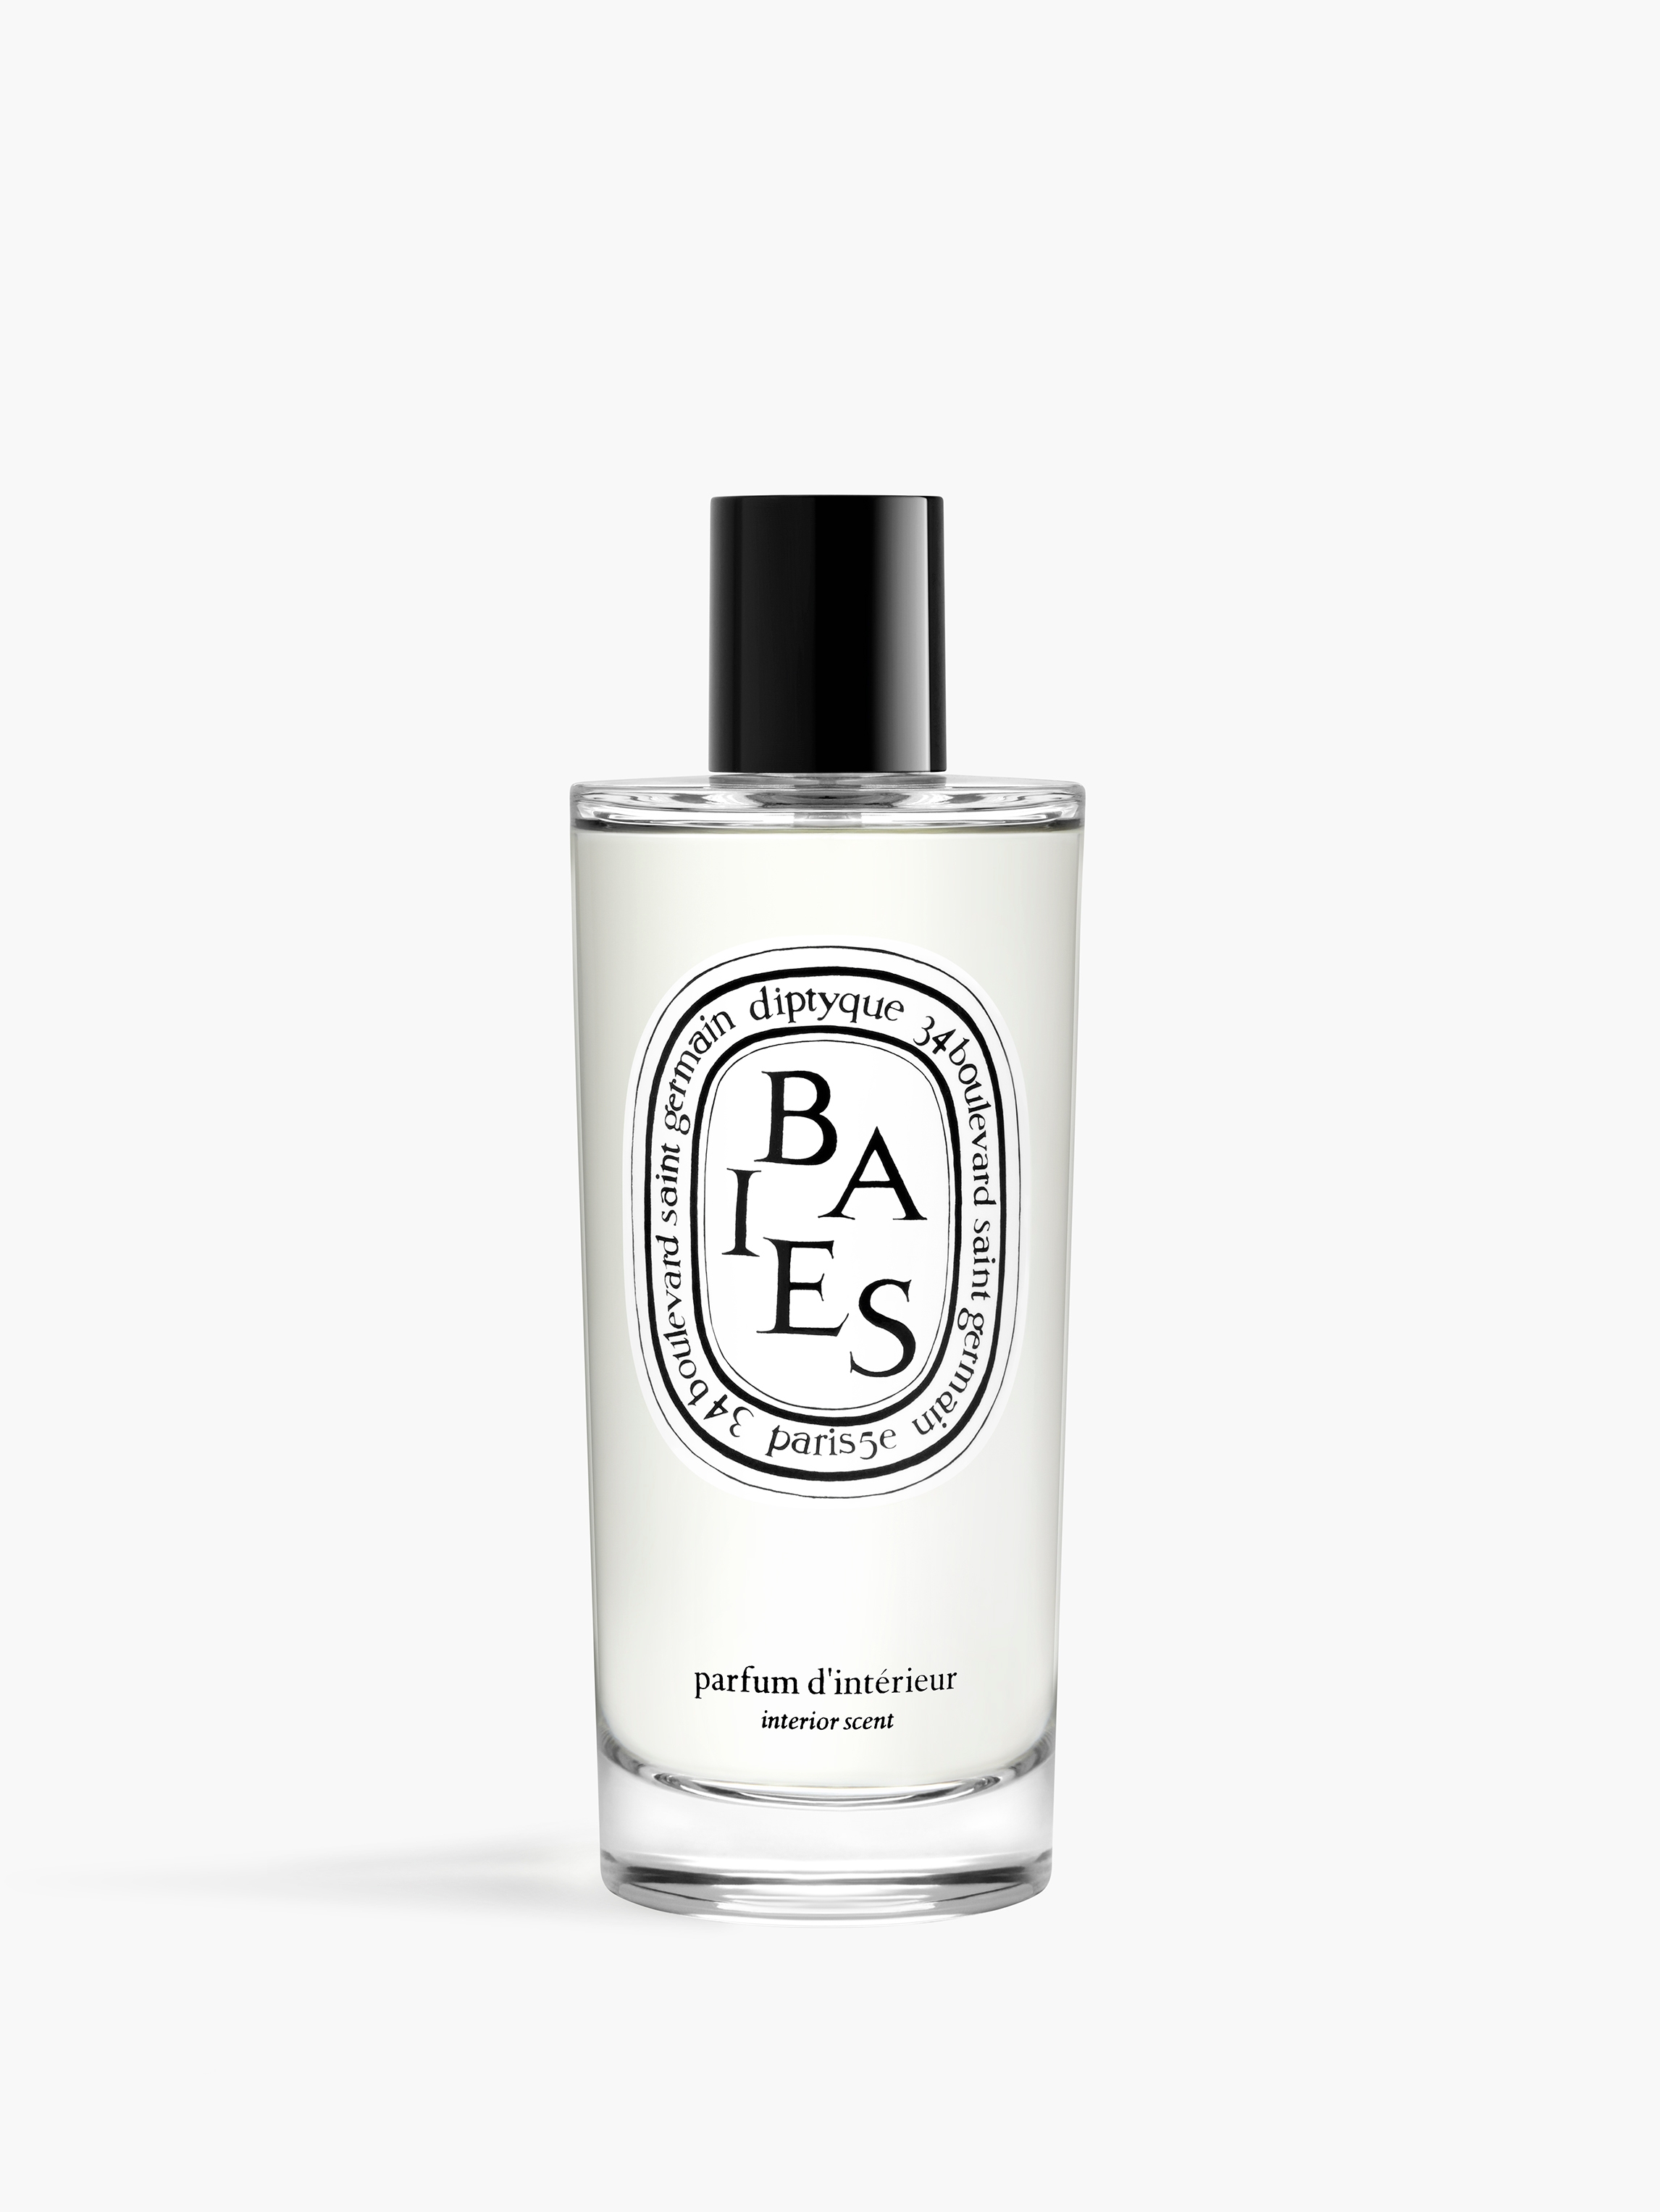 Baies (Berries) - Room Spray 150ml | Diptyque Paris